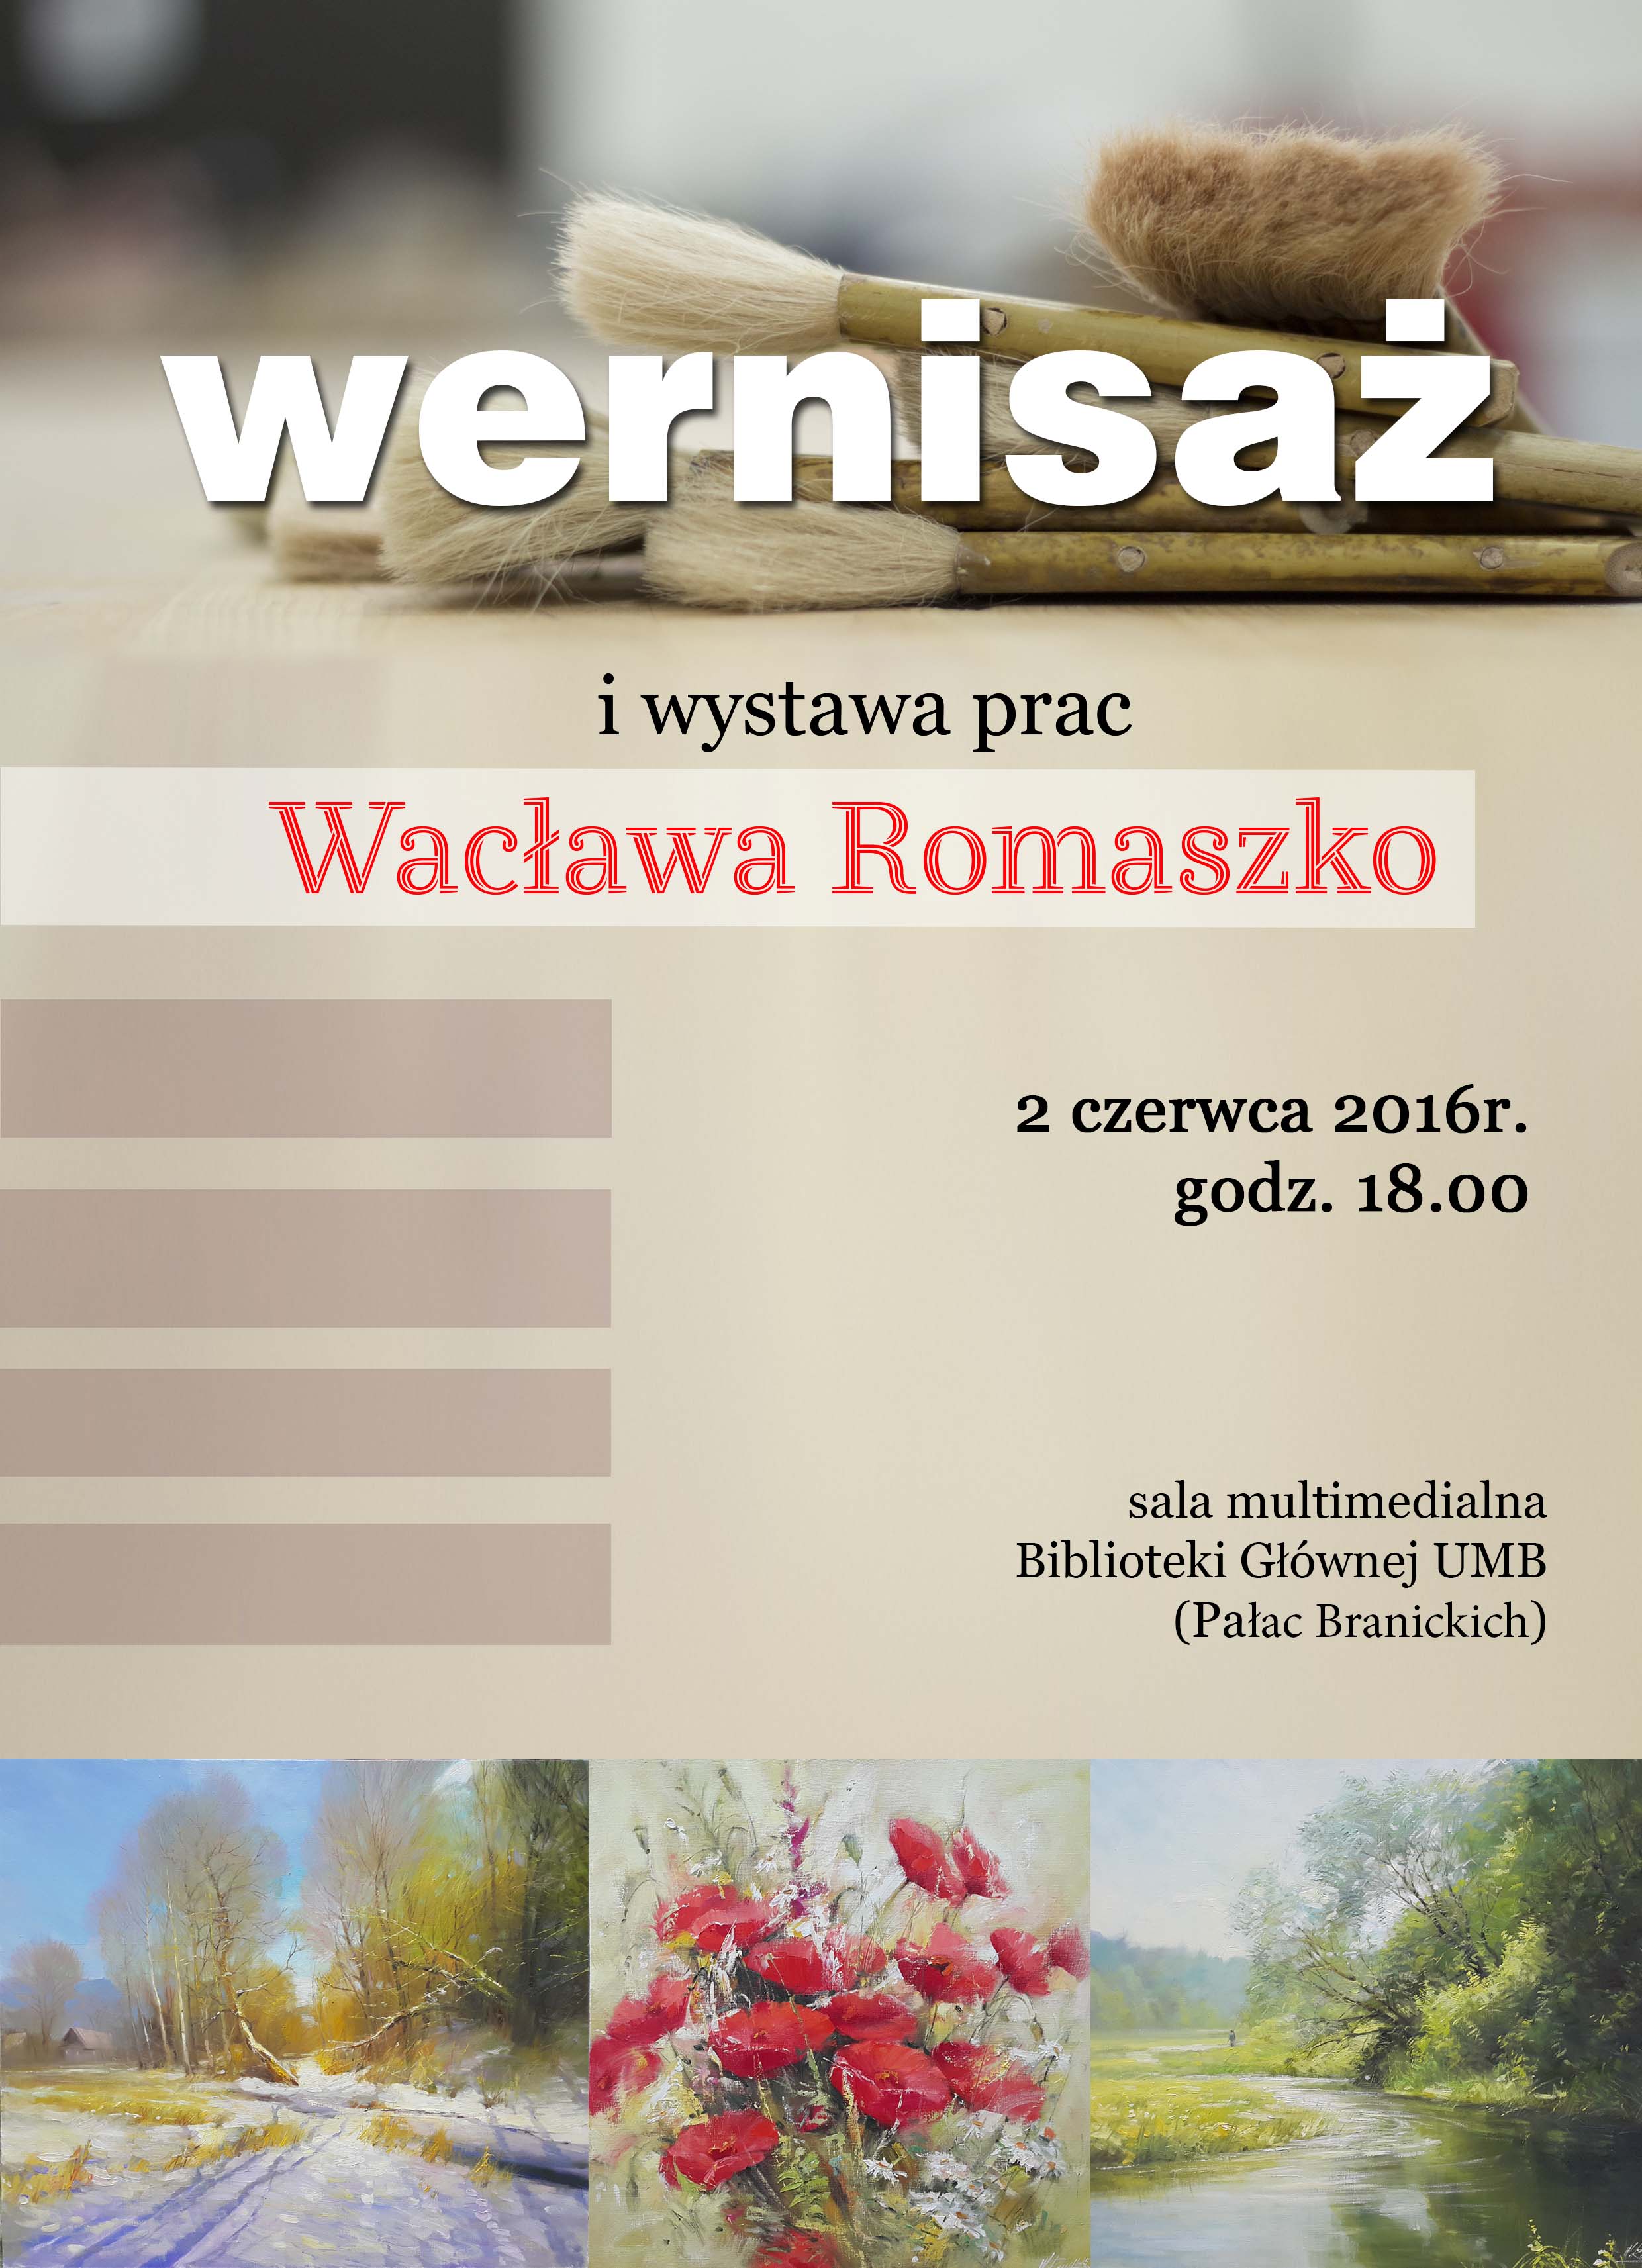 Wystawa prac Wacława Romaszko w Bibliotece Głównej UMB - 02.06.2016